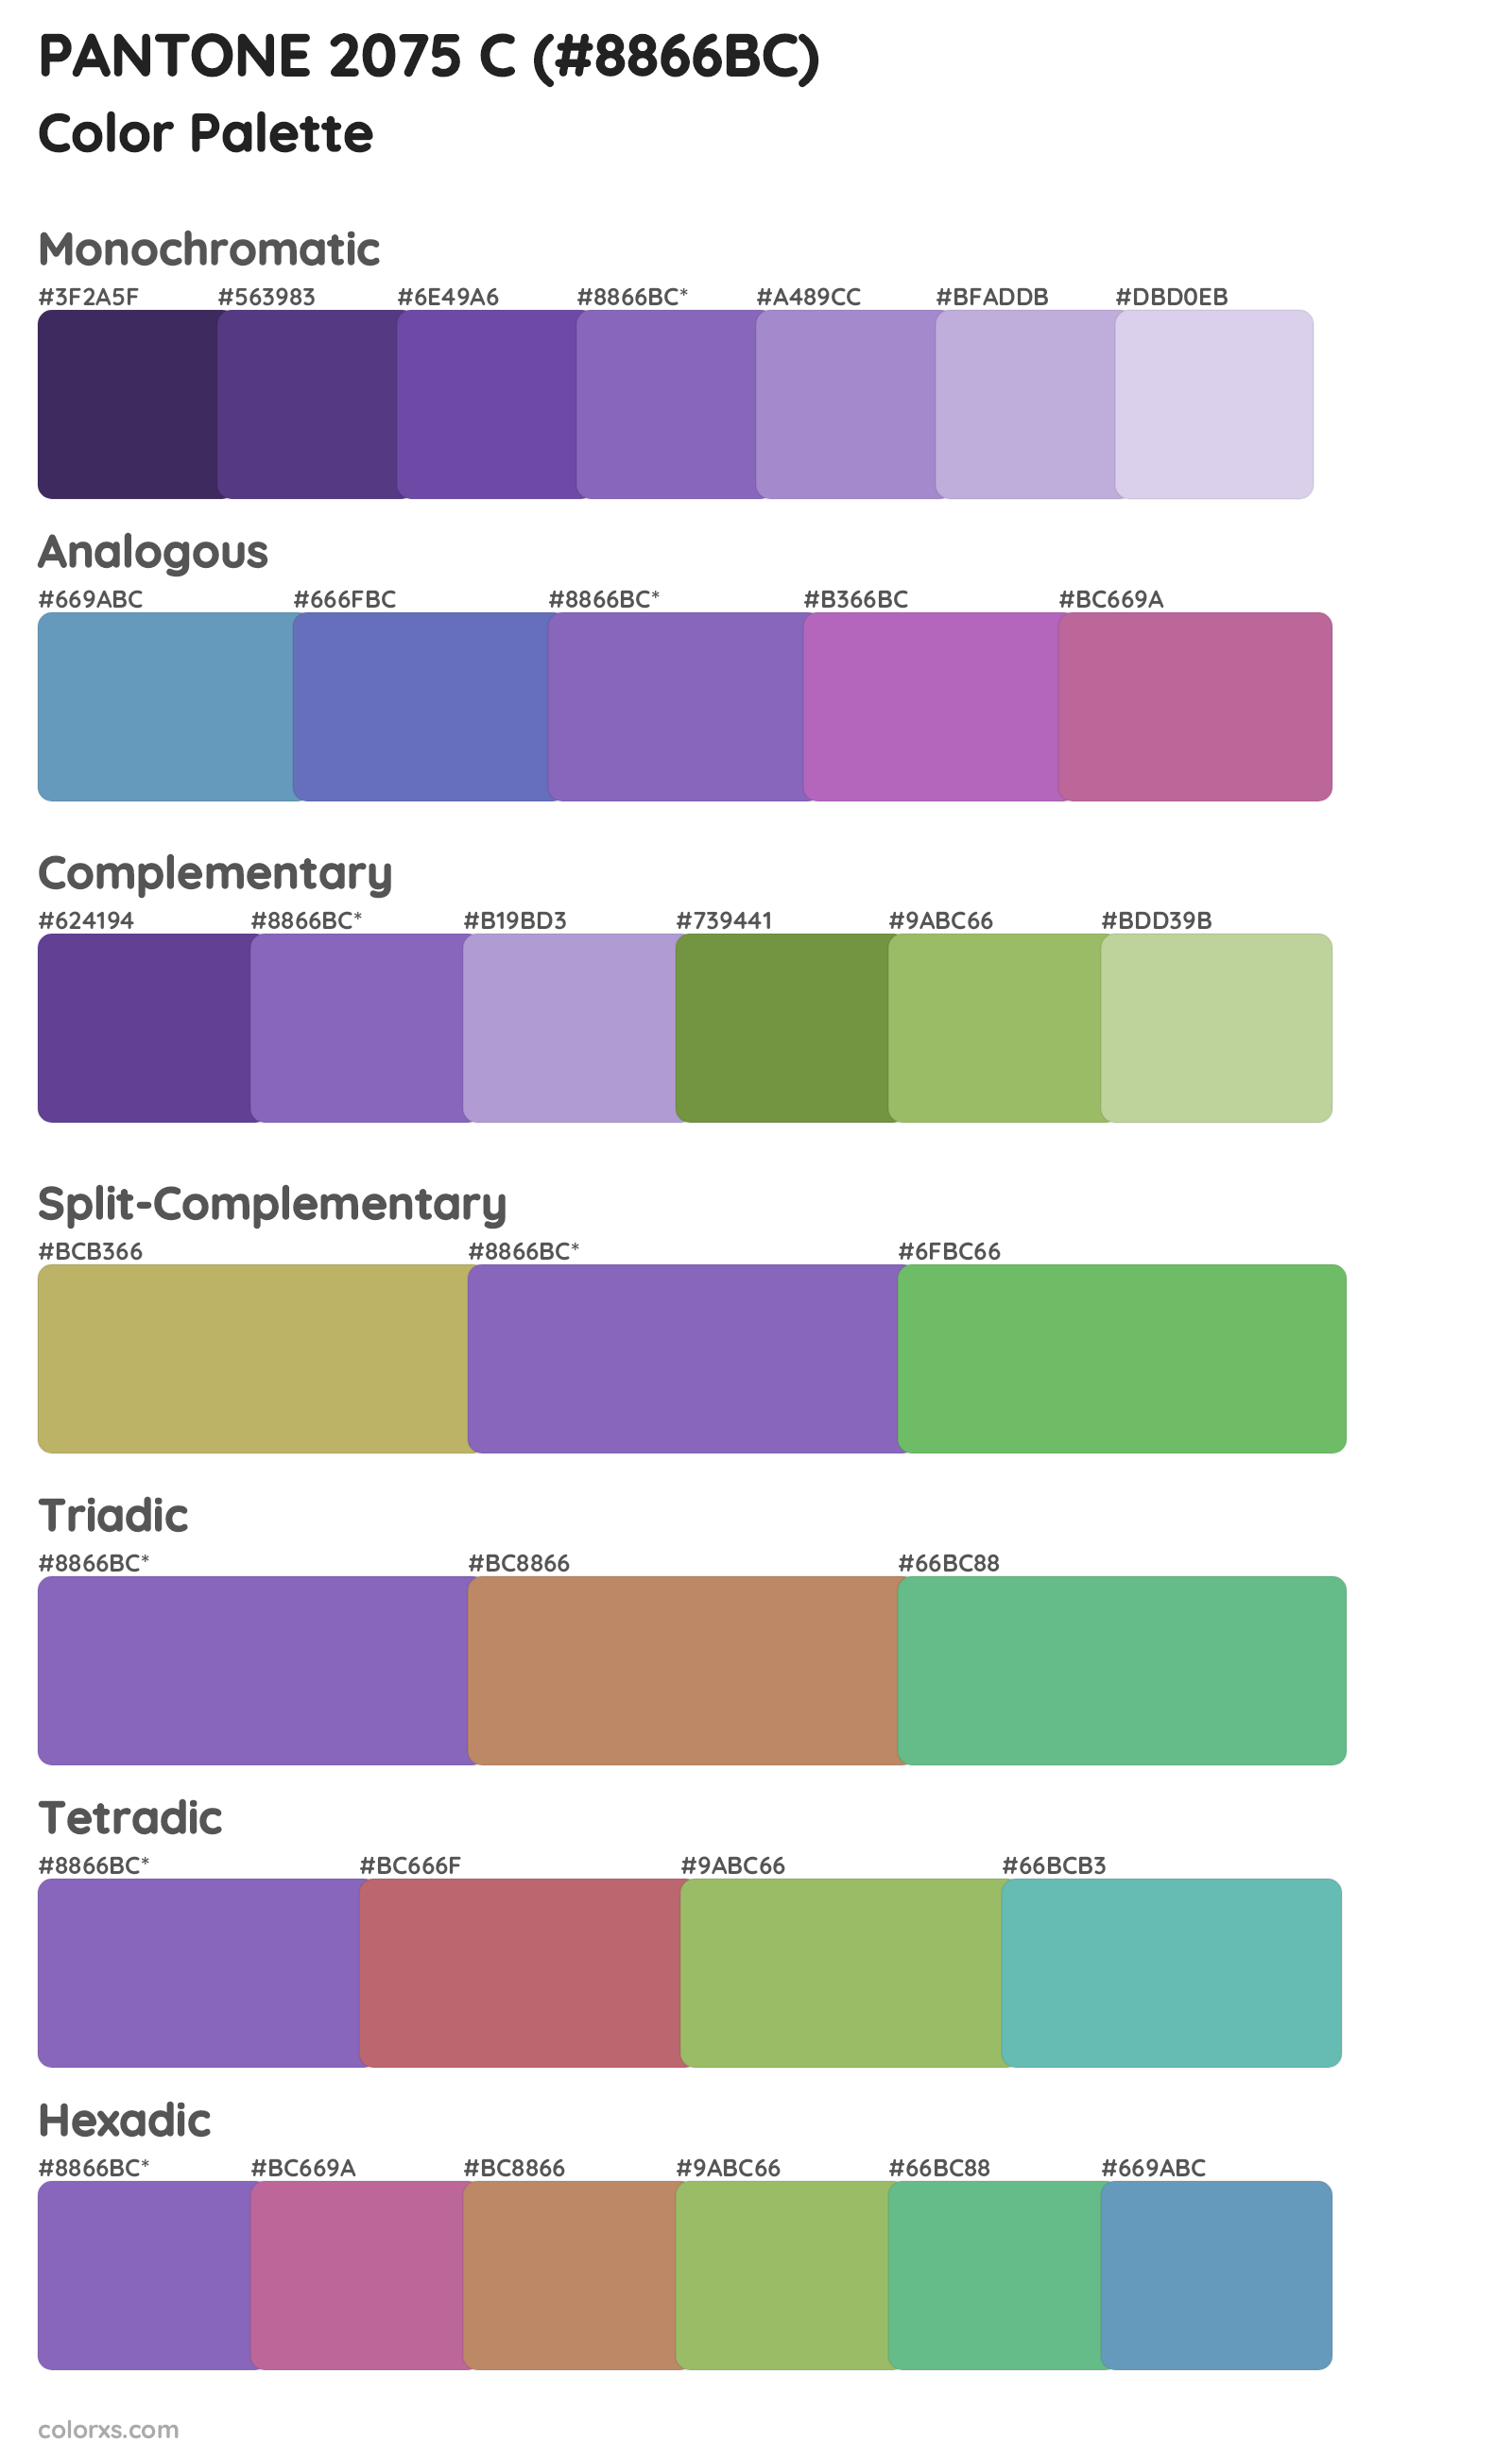 PANTONE 2075 C Color Scheme Palettes